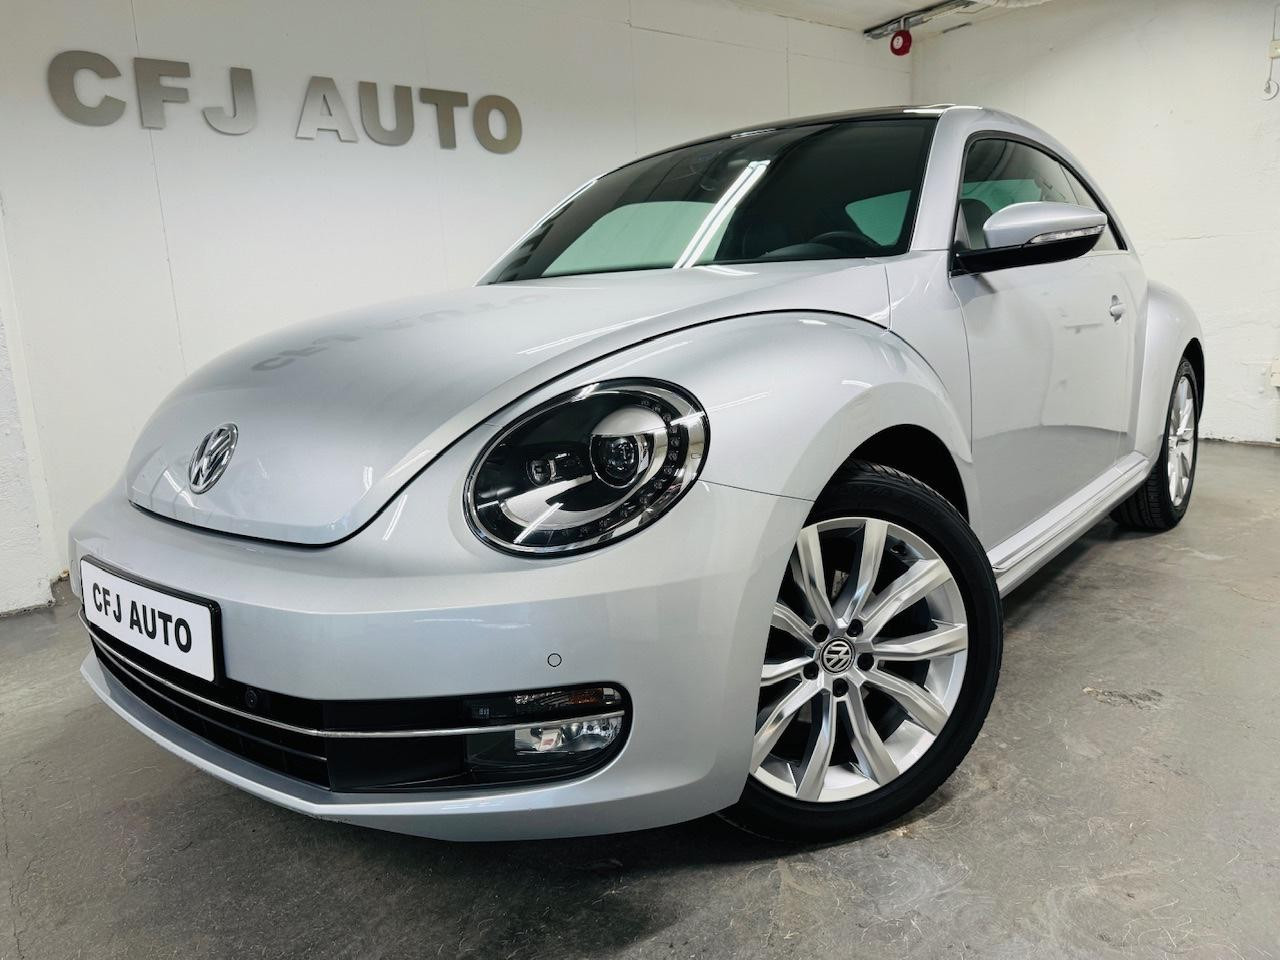 Bilde av 'Volkswagen Beetle'